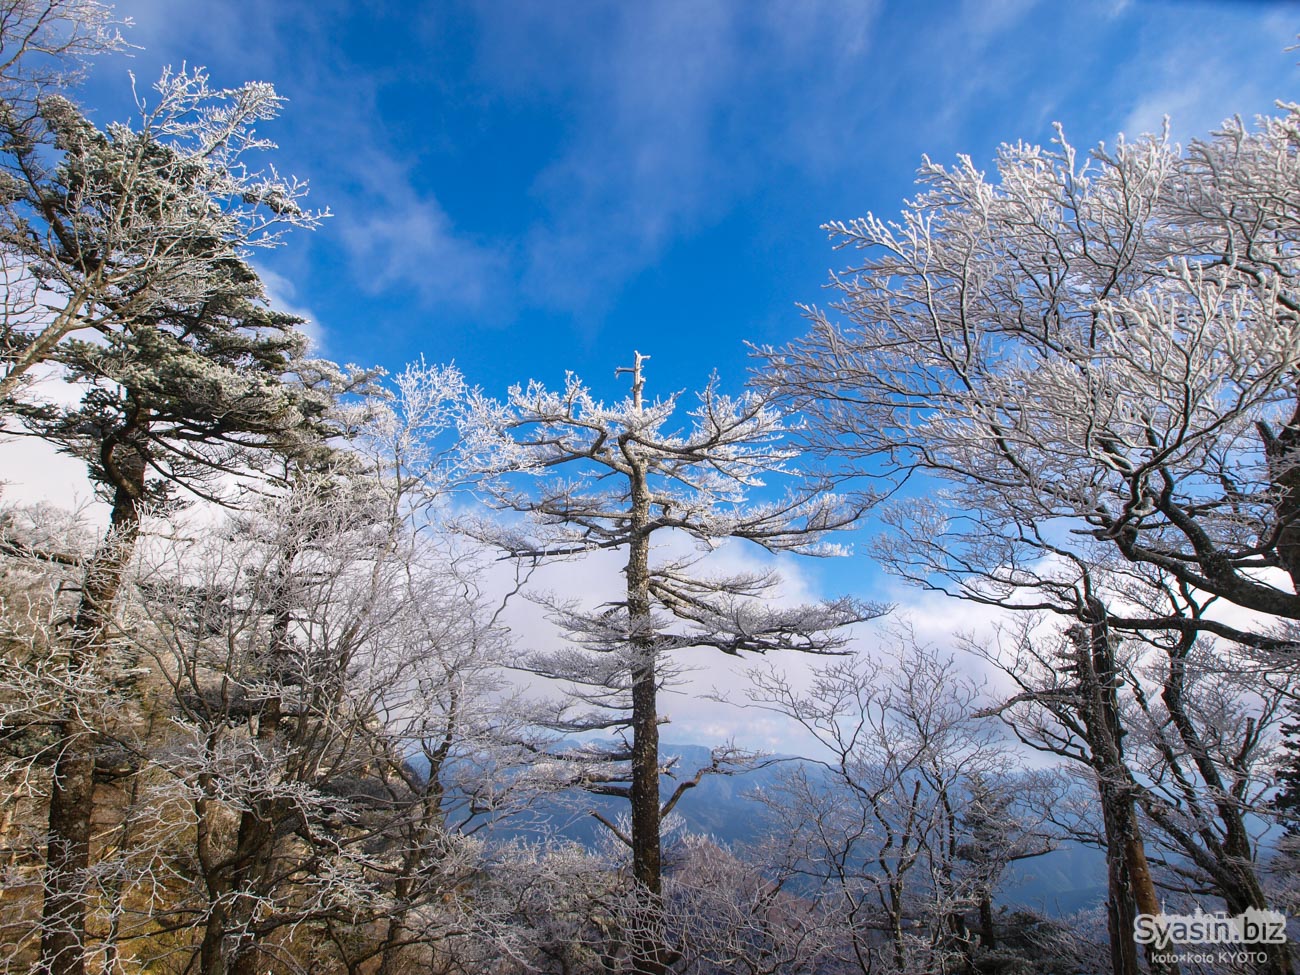 大普賢岳・周回コース – 樹氷と絶景を眺める最高の大峰登山